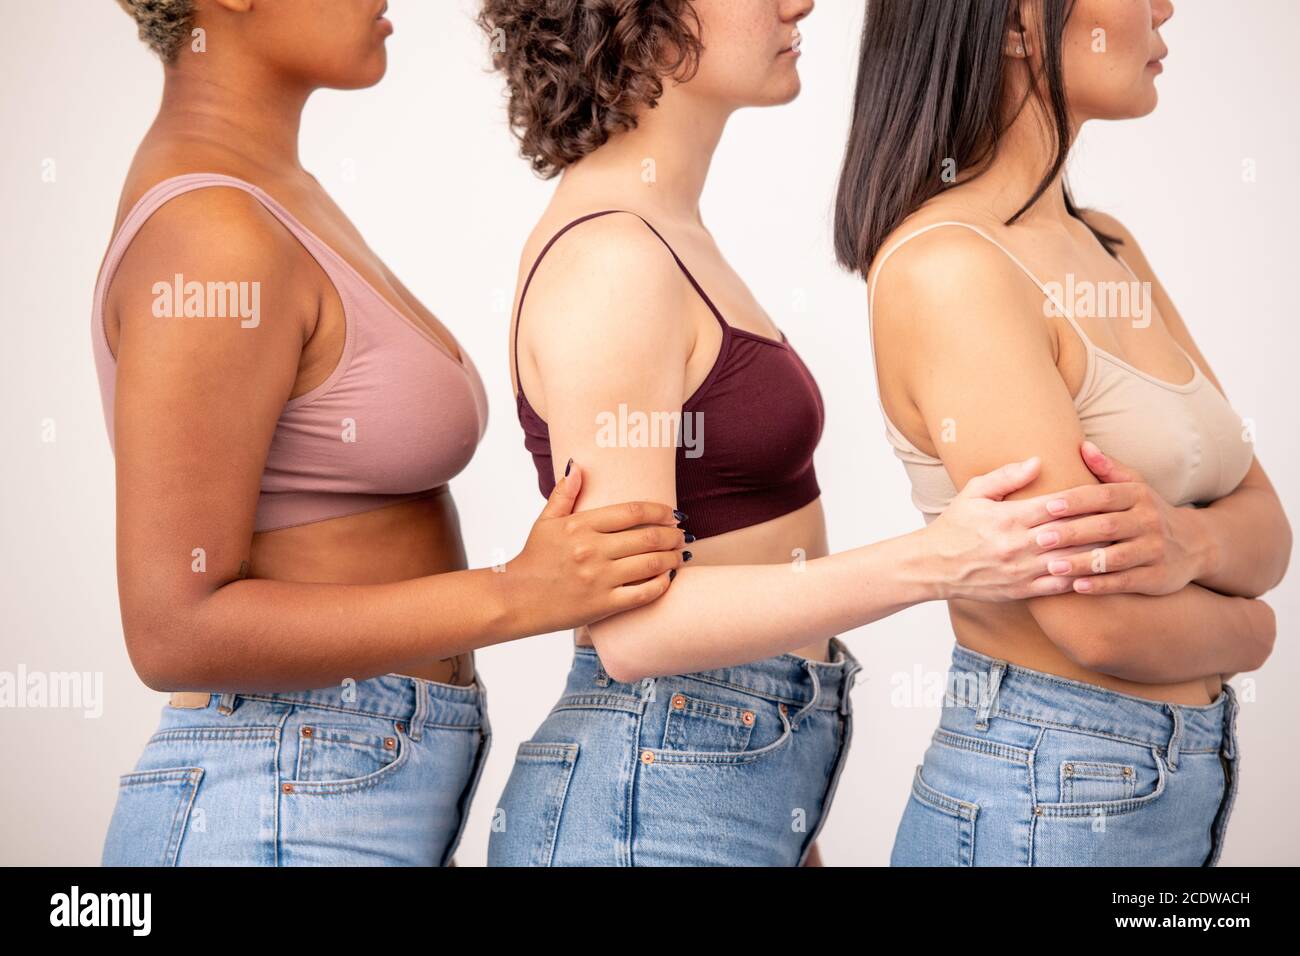 Seitenansicht von drei jungen Frauen verschiedener Ethnien in Tanktops und blaue Jeans Stockfoto